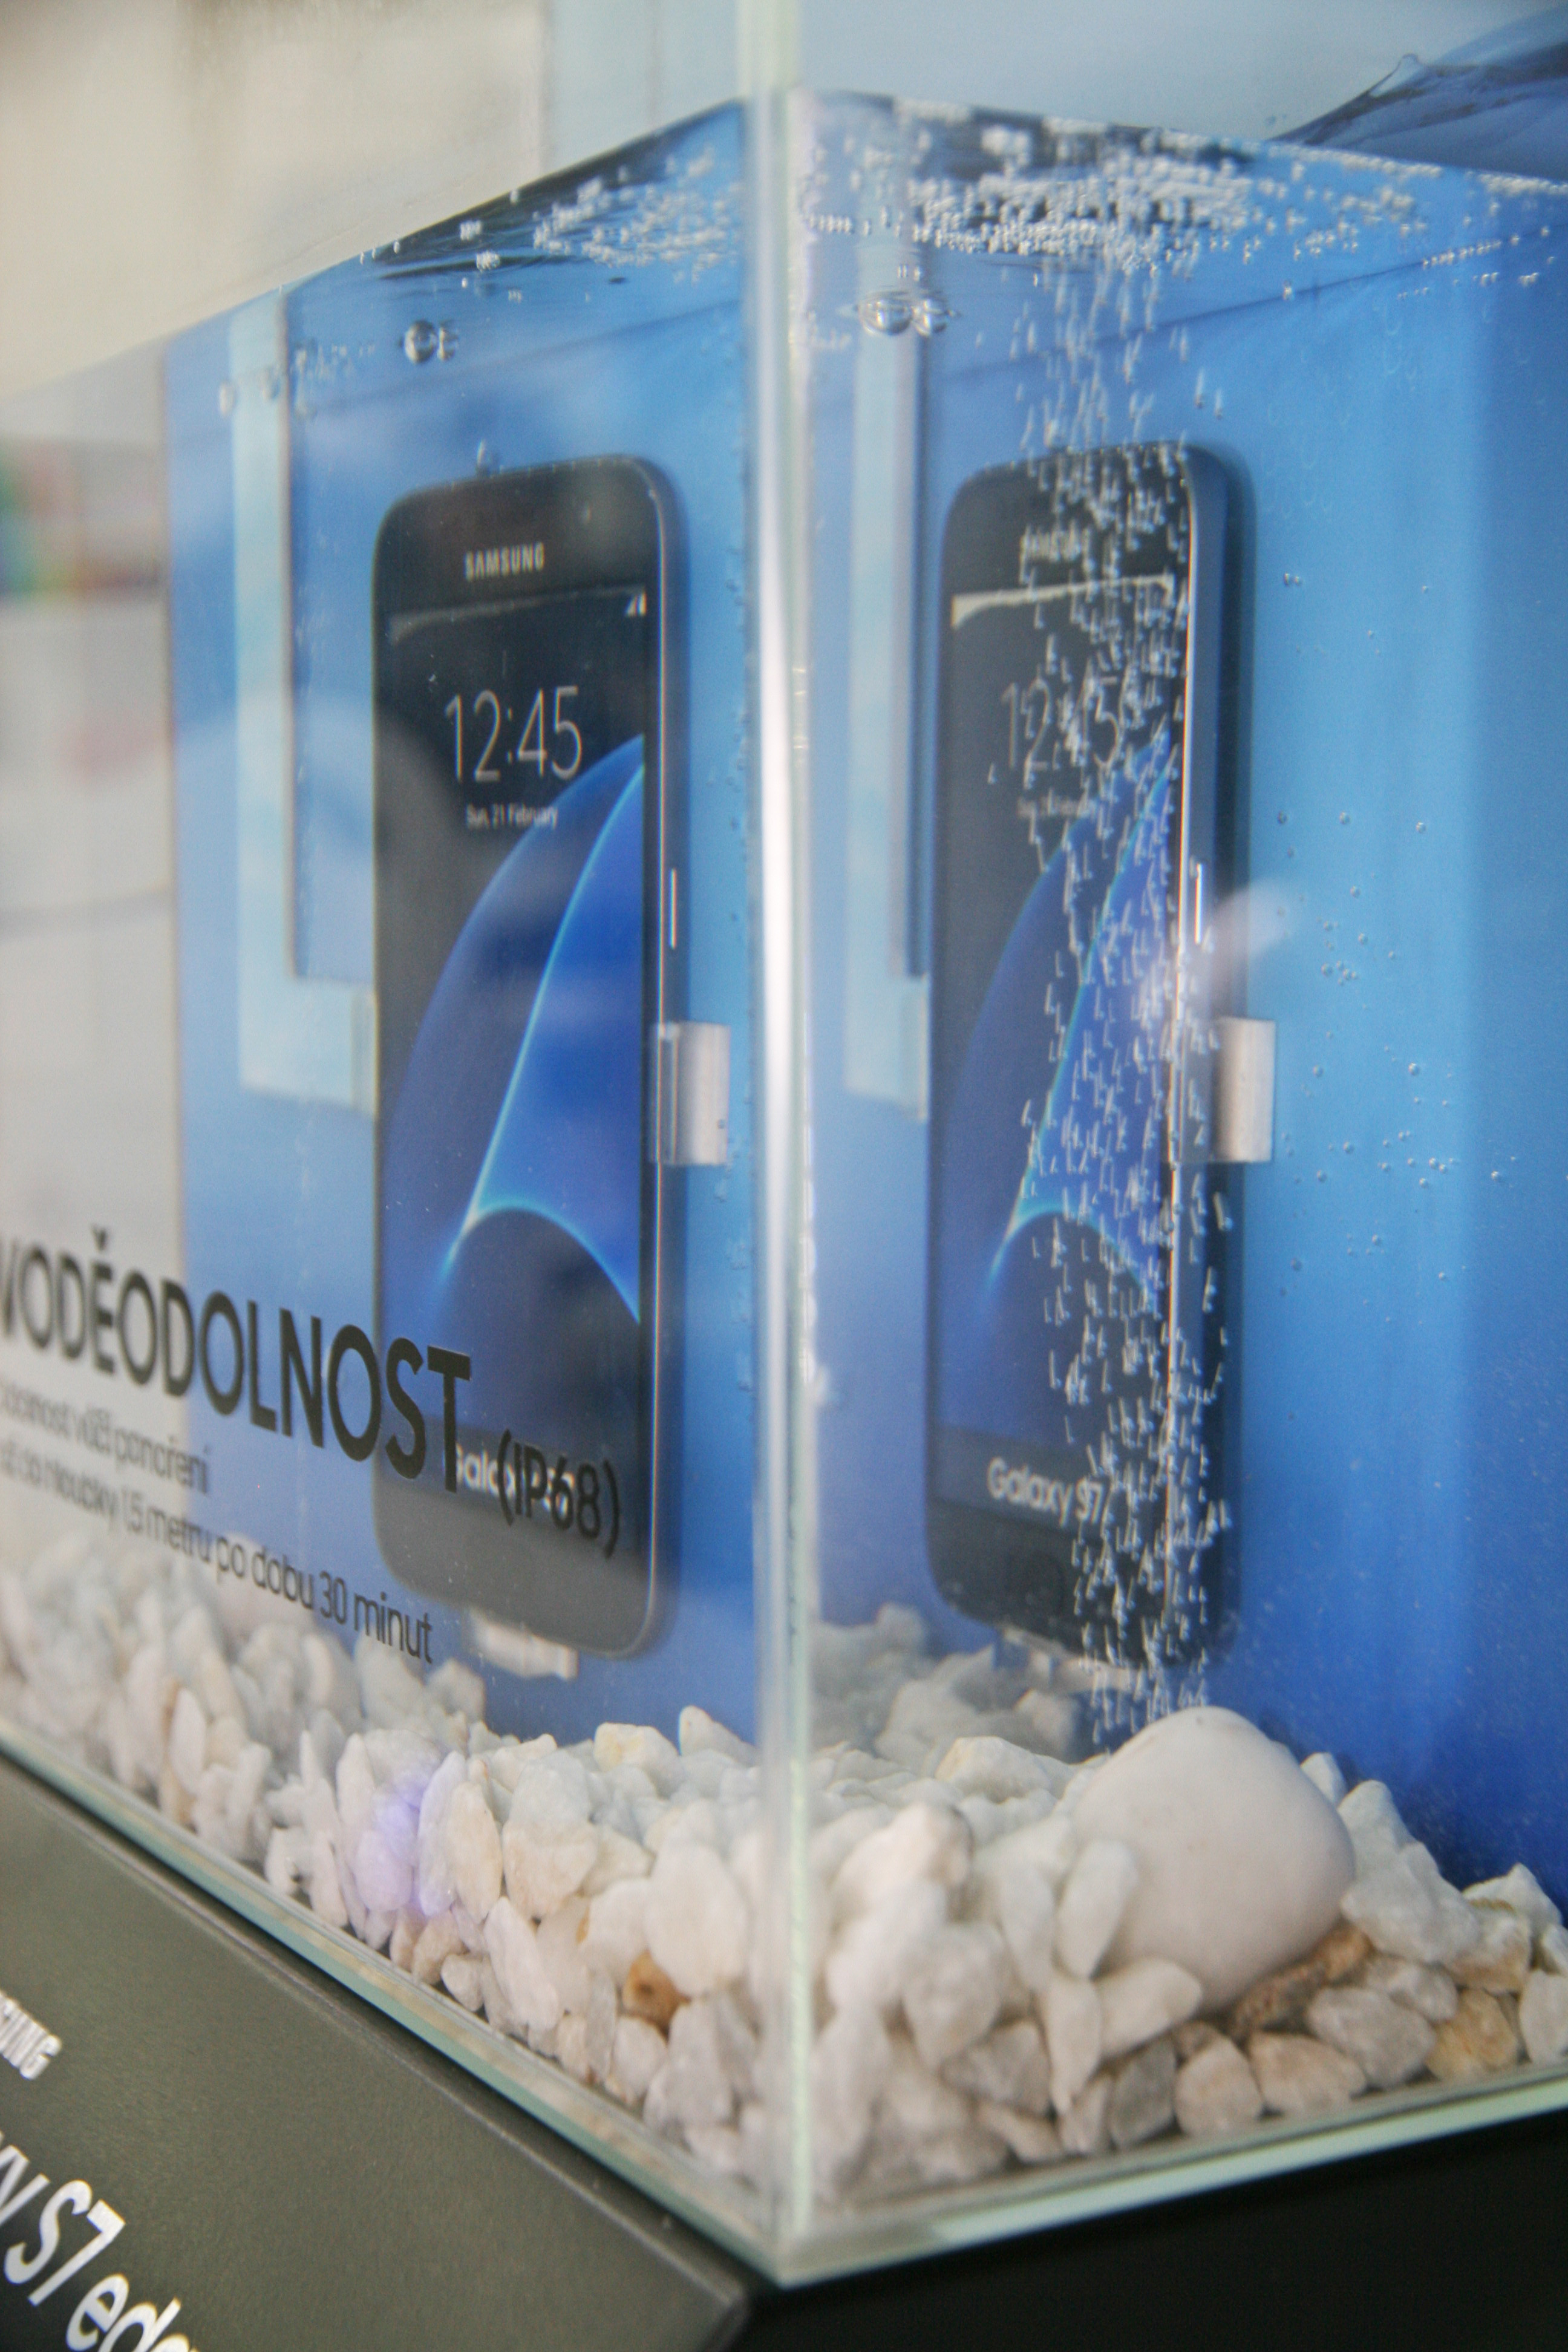 Výroba vodních akvárií pro testování voděodolnosti telefonů značky Samsung